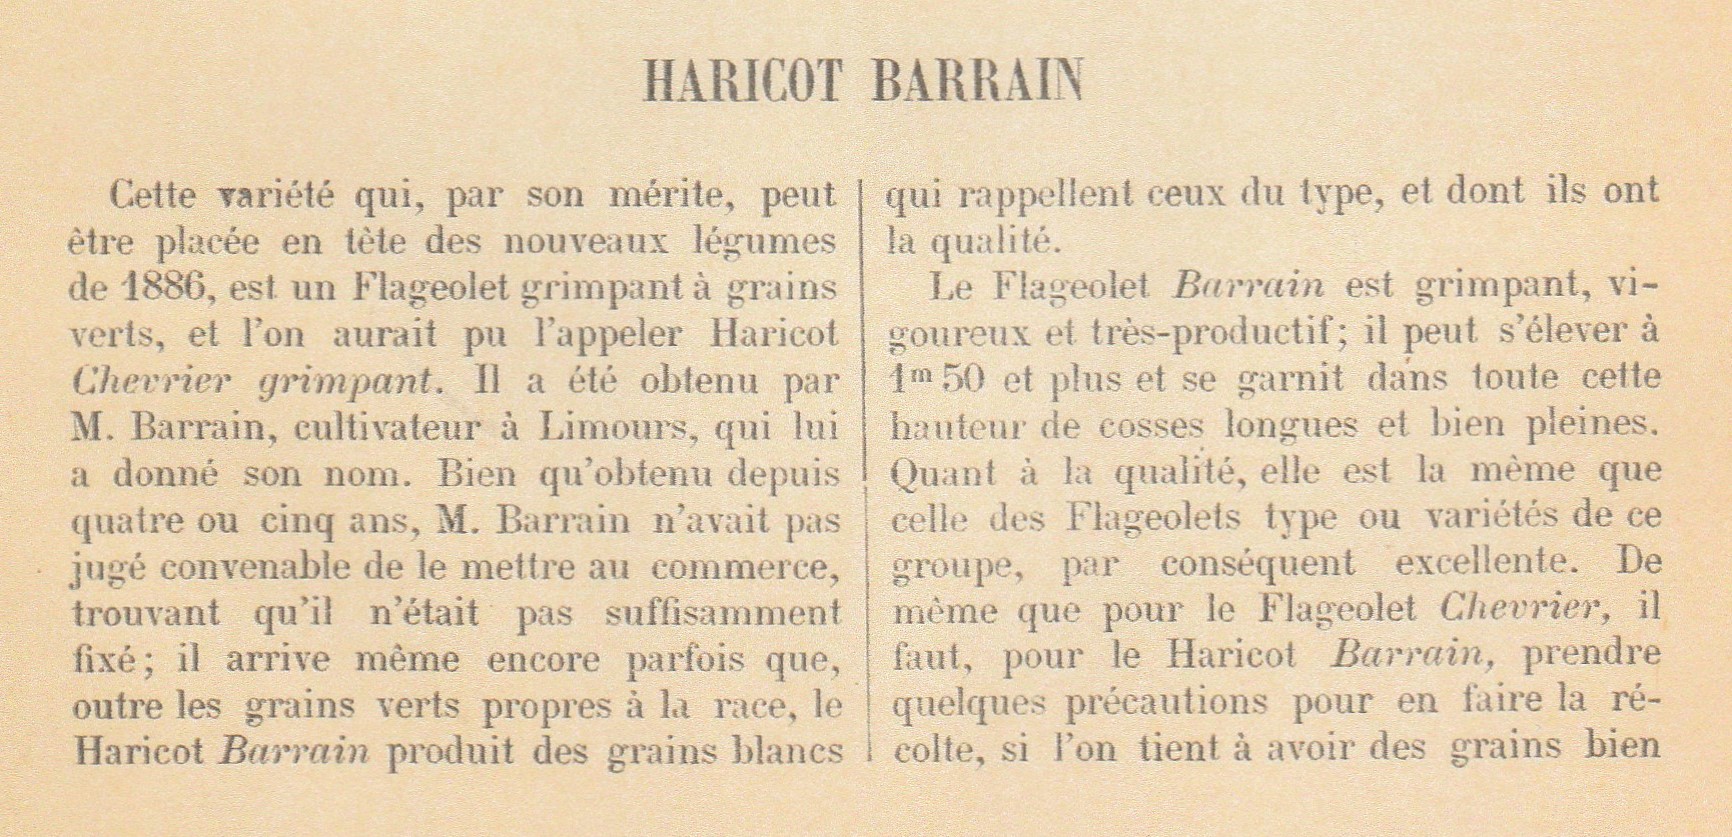 Barrain, RH-1887-p.119